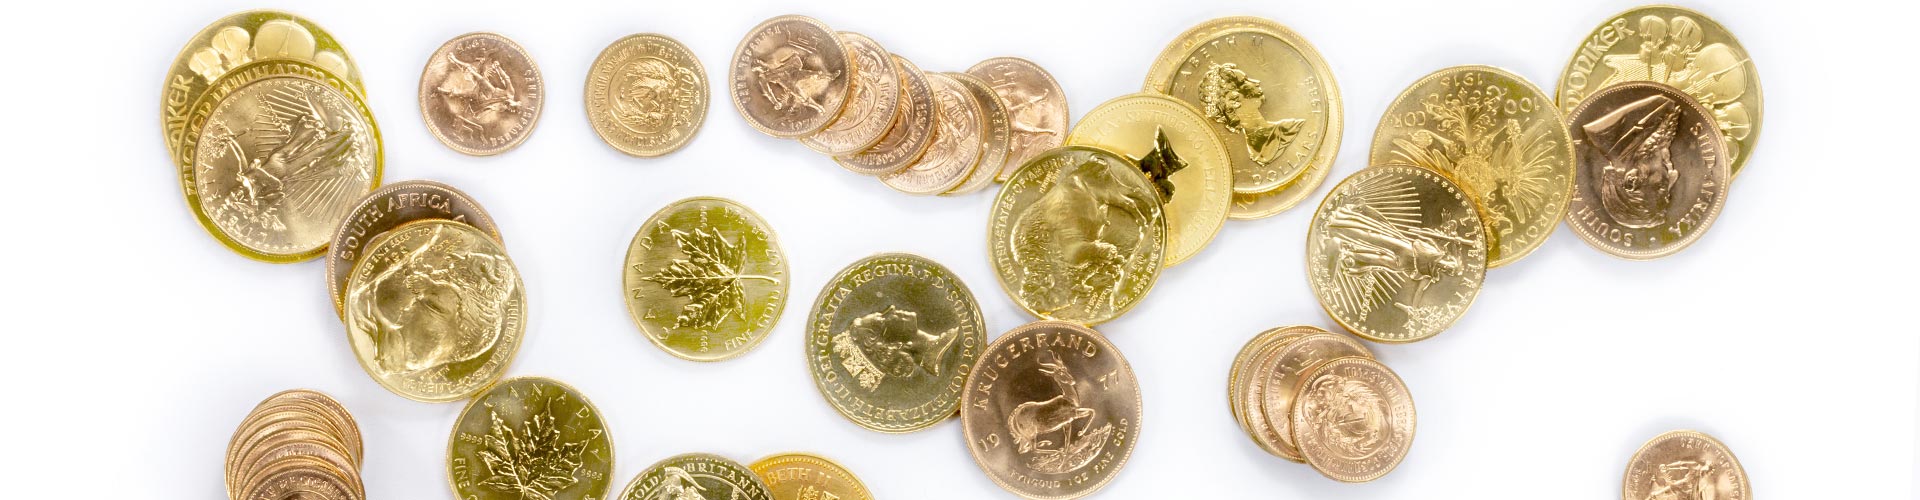 Verschiedene Goldmünzen und Goldanlagemünzen unter anderem Krügerrand und Maple Leaf